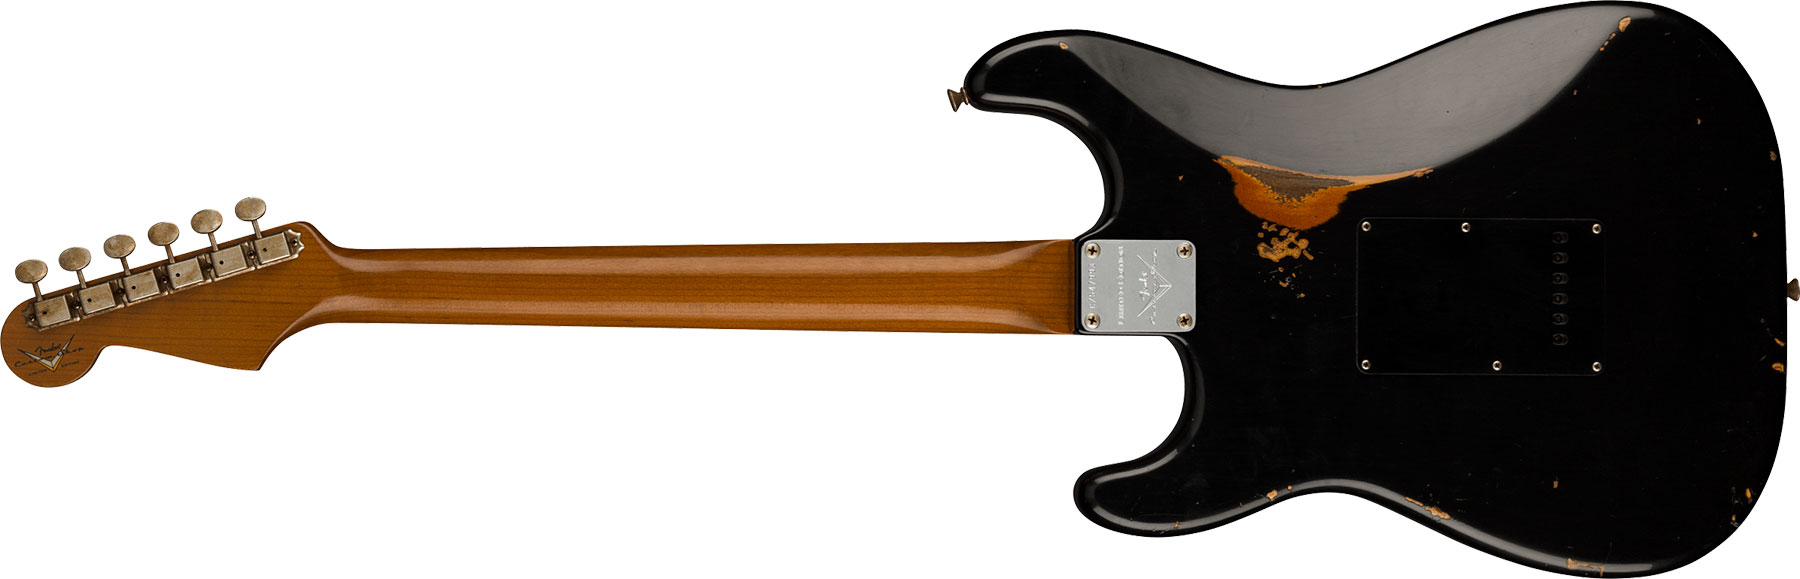 Fender Custom Shop Strat Dual Mag Ii Ltd Usa 3s Trem Rw - Relic Black Over 3-color Sunburst - Guitare Électrique Forme Str - Variation 1